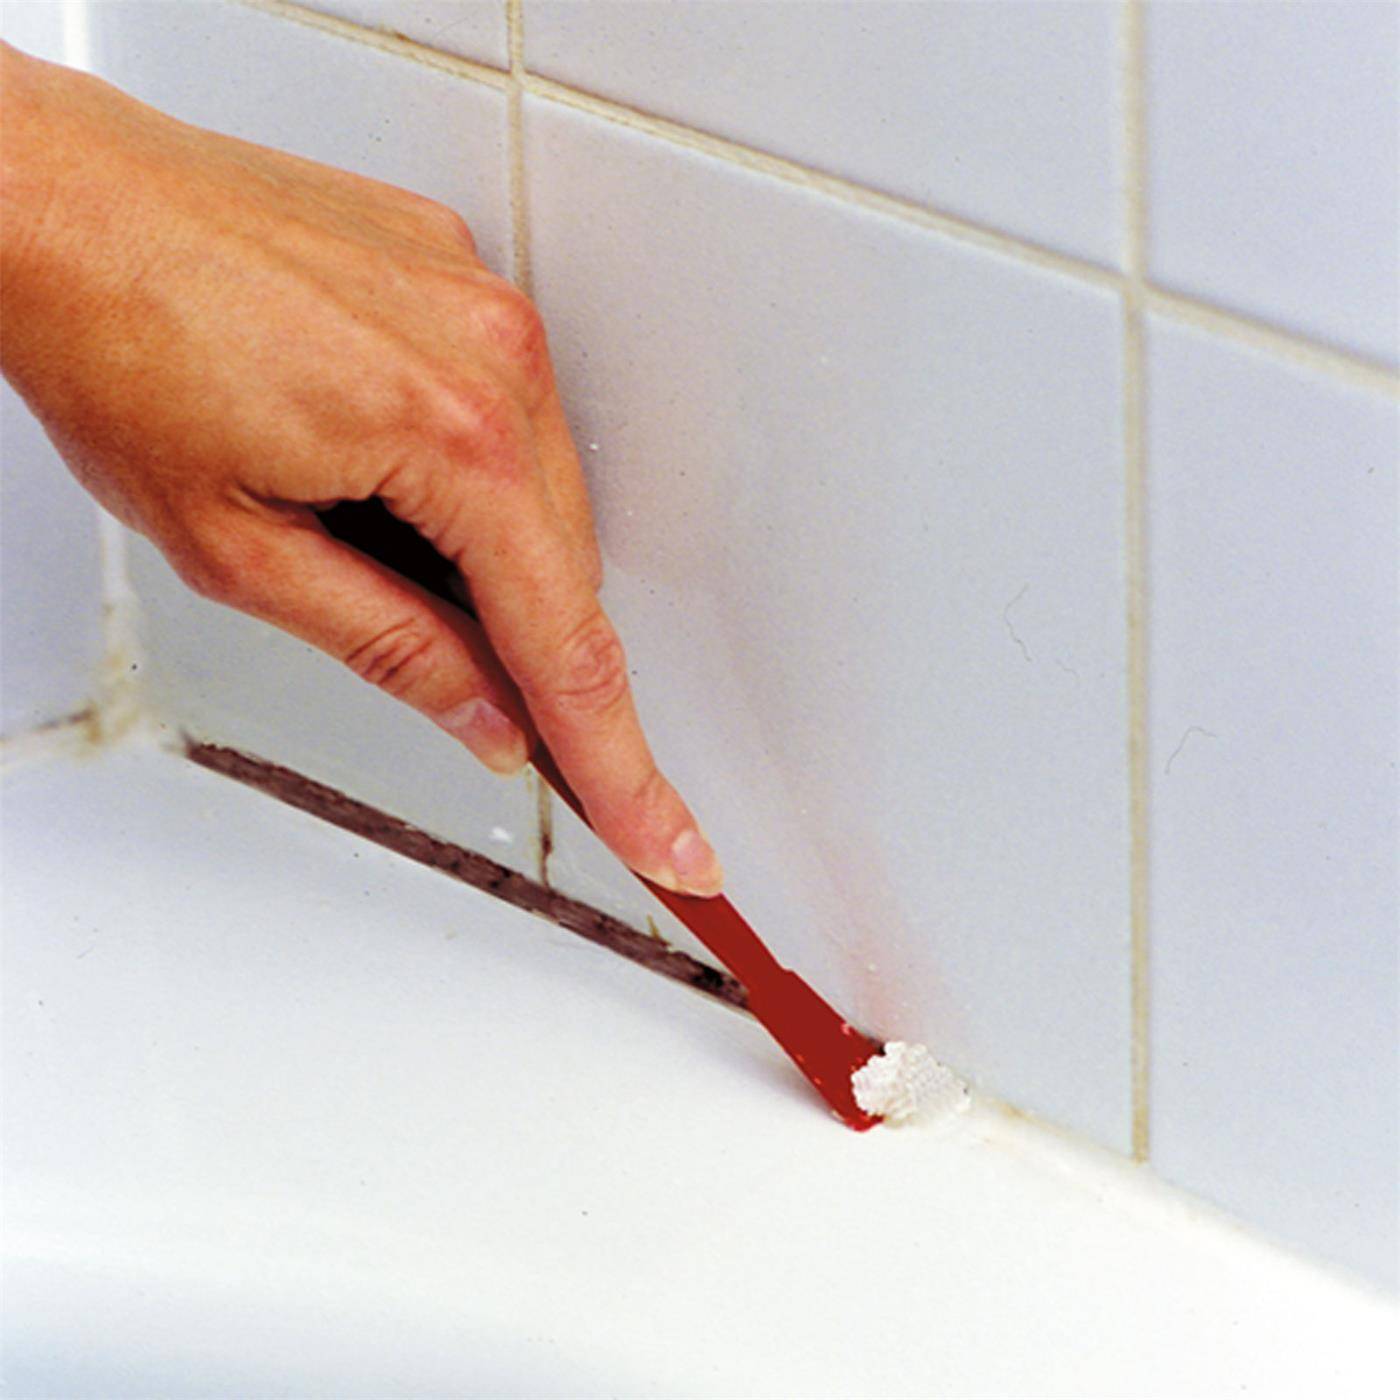 Как убрать силиконовый герметик с ванны: эффективные способы и методы, советы, отзывы